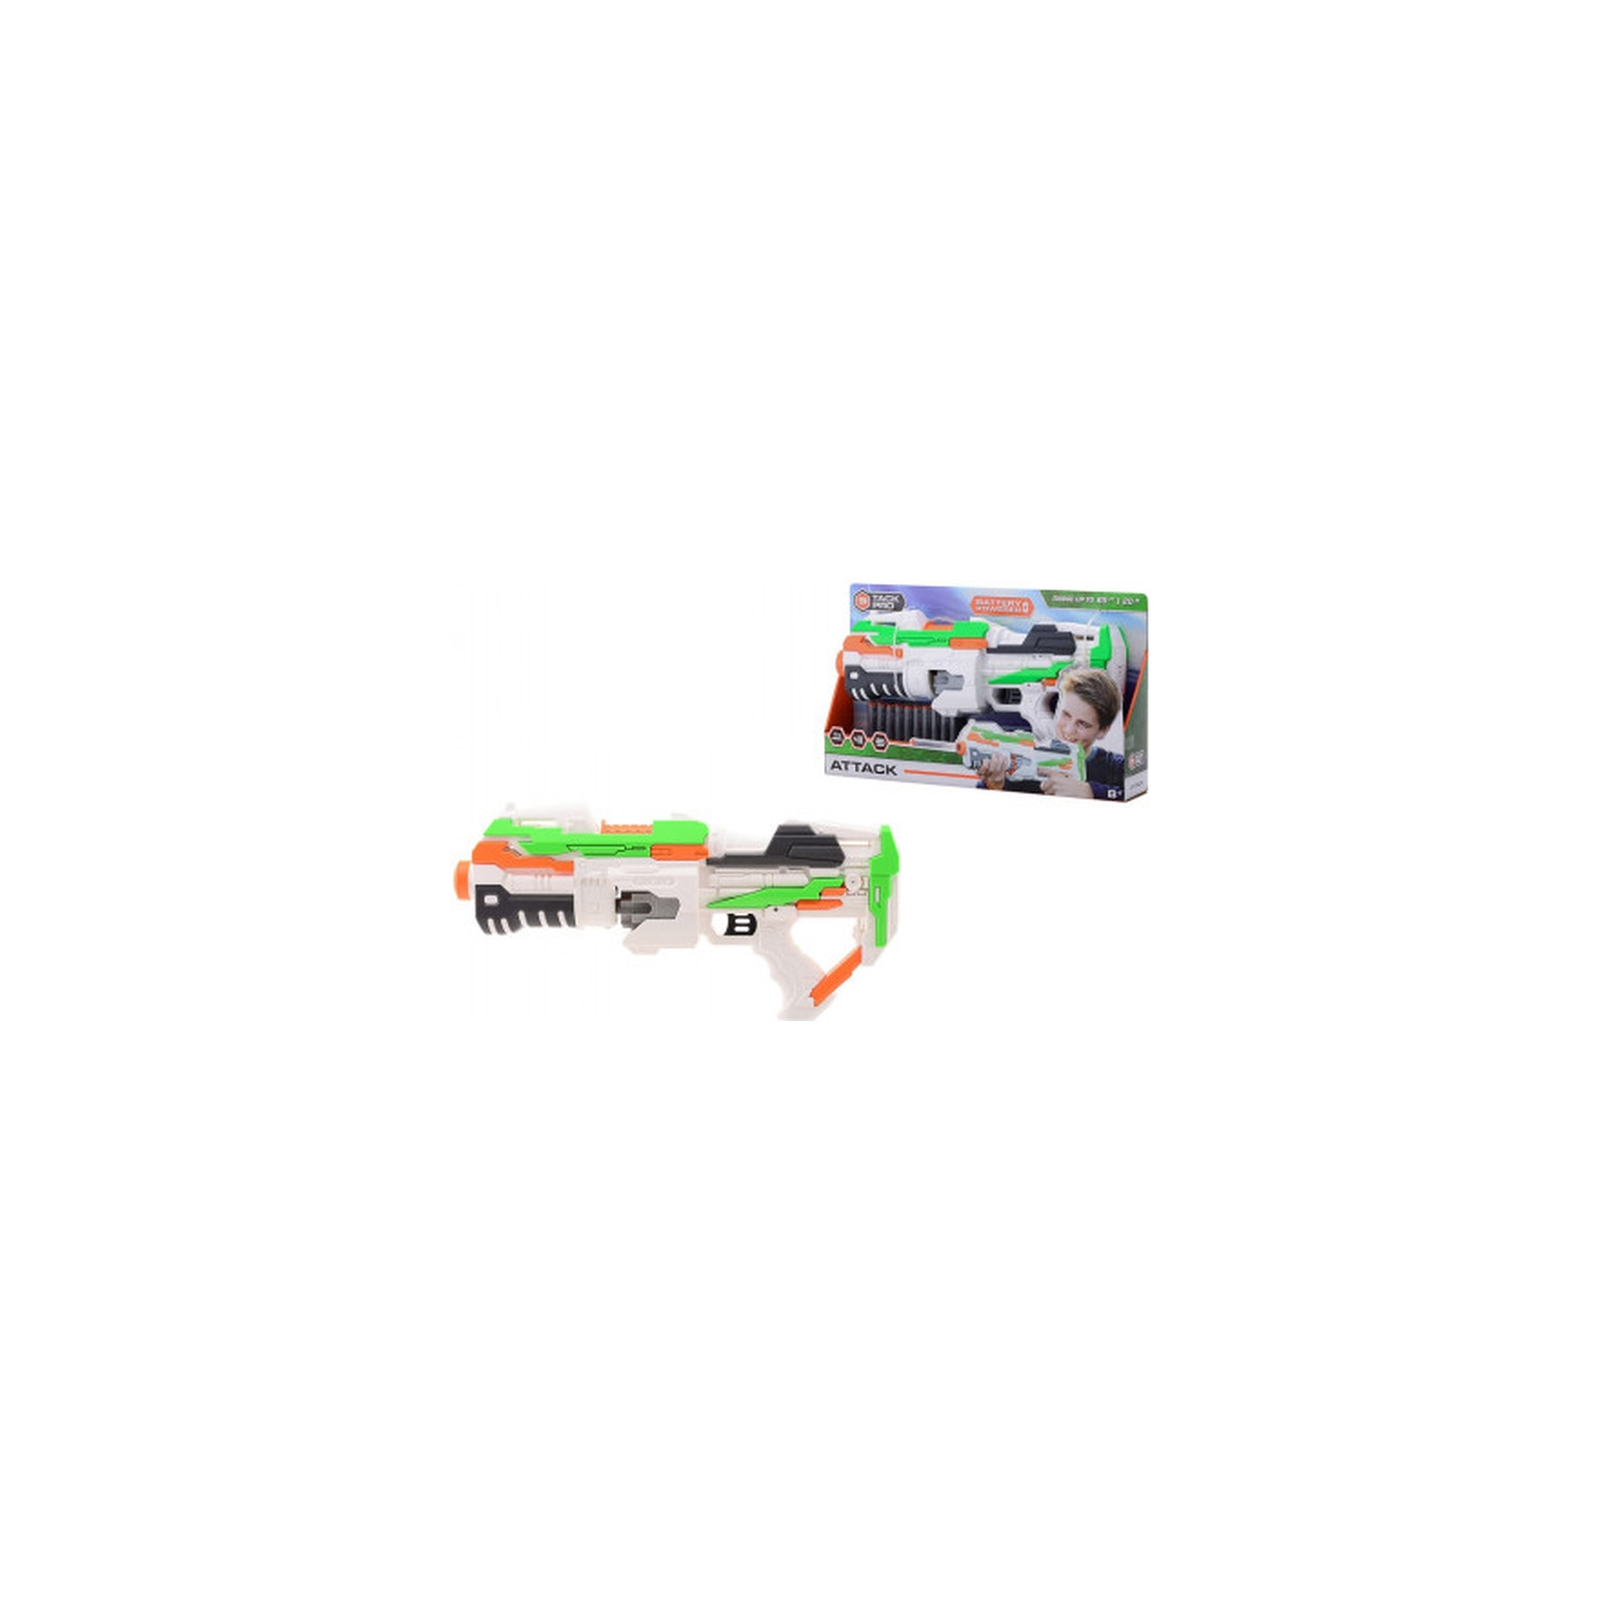 Игрушечное оружие Tack Pro Бластер Attack (6337448) изображение 2